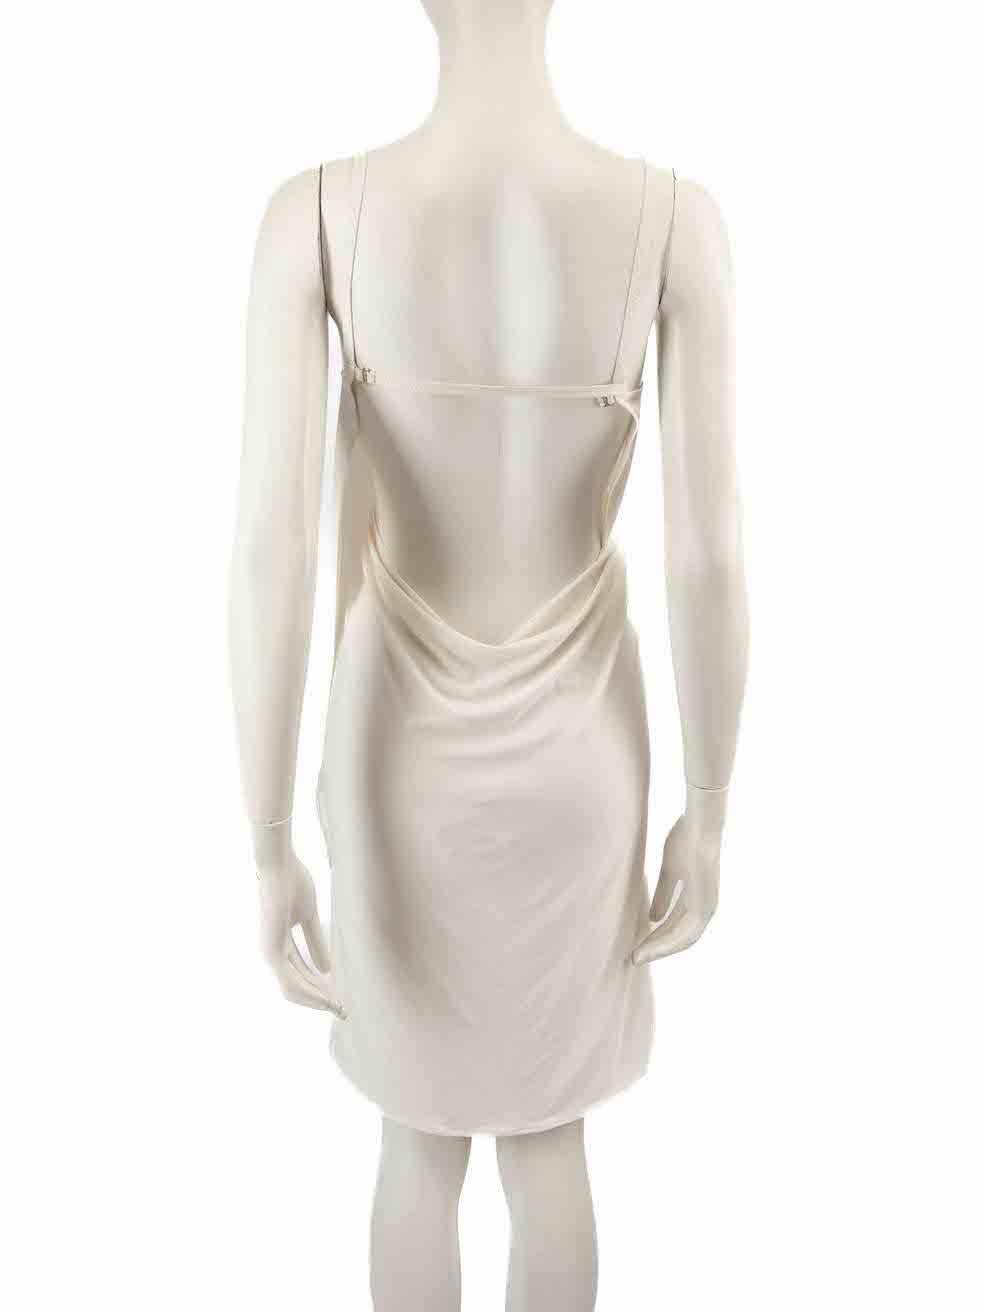 La Perla Cream Sleeveless Slip Dress Size M In New Condition For Sale In London, GB